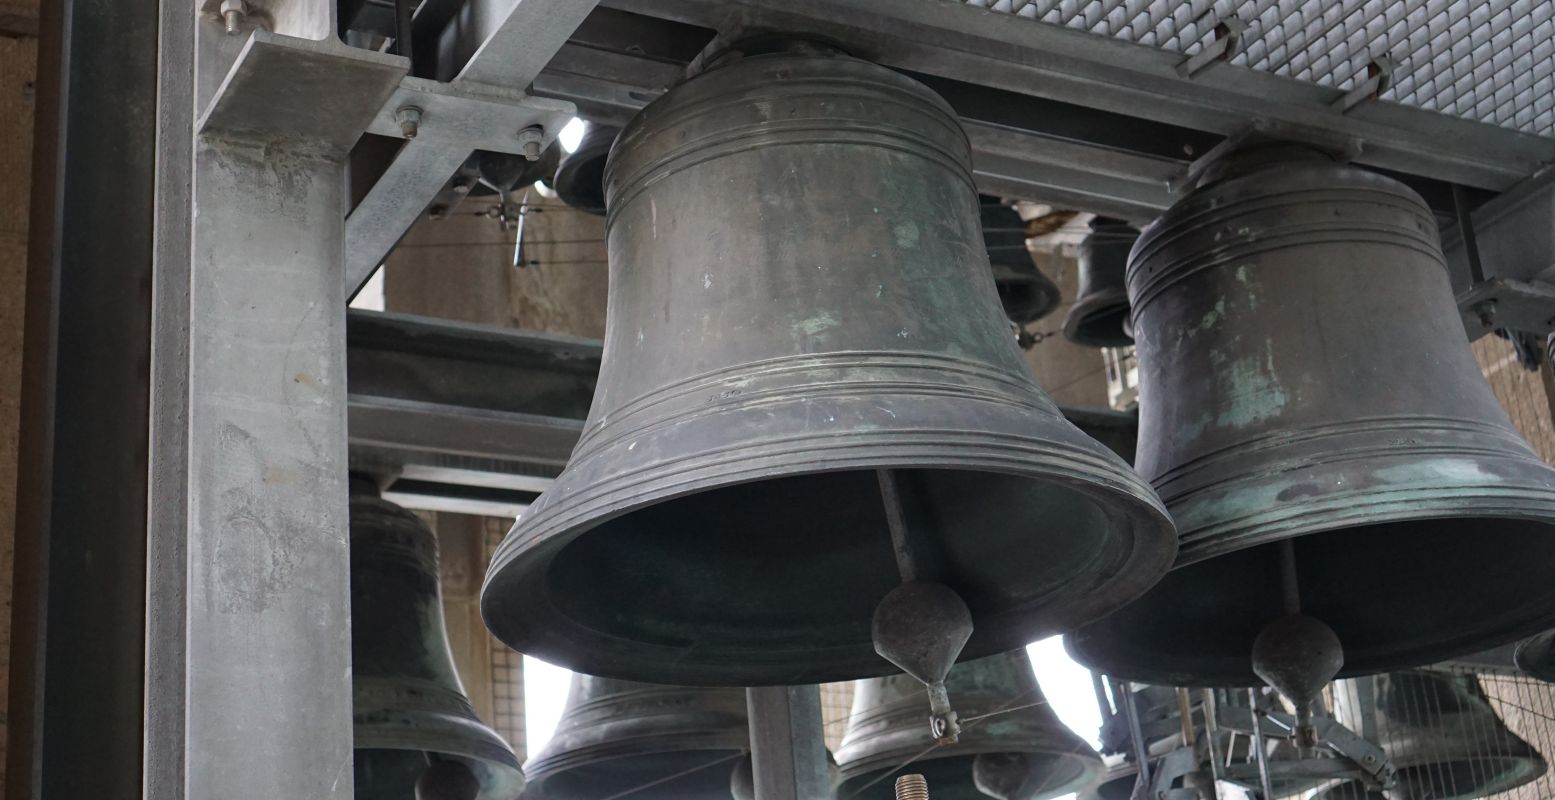 We kunnen de klokken van het carillon bijna aanraken. Foto: DagjeWeg.NL